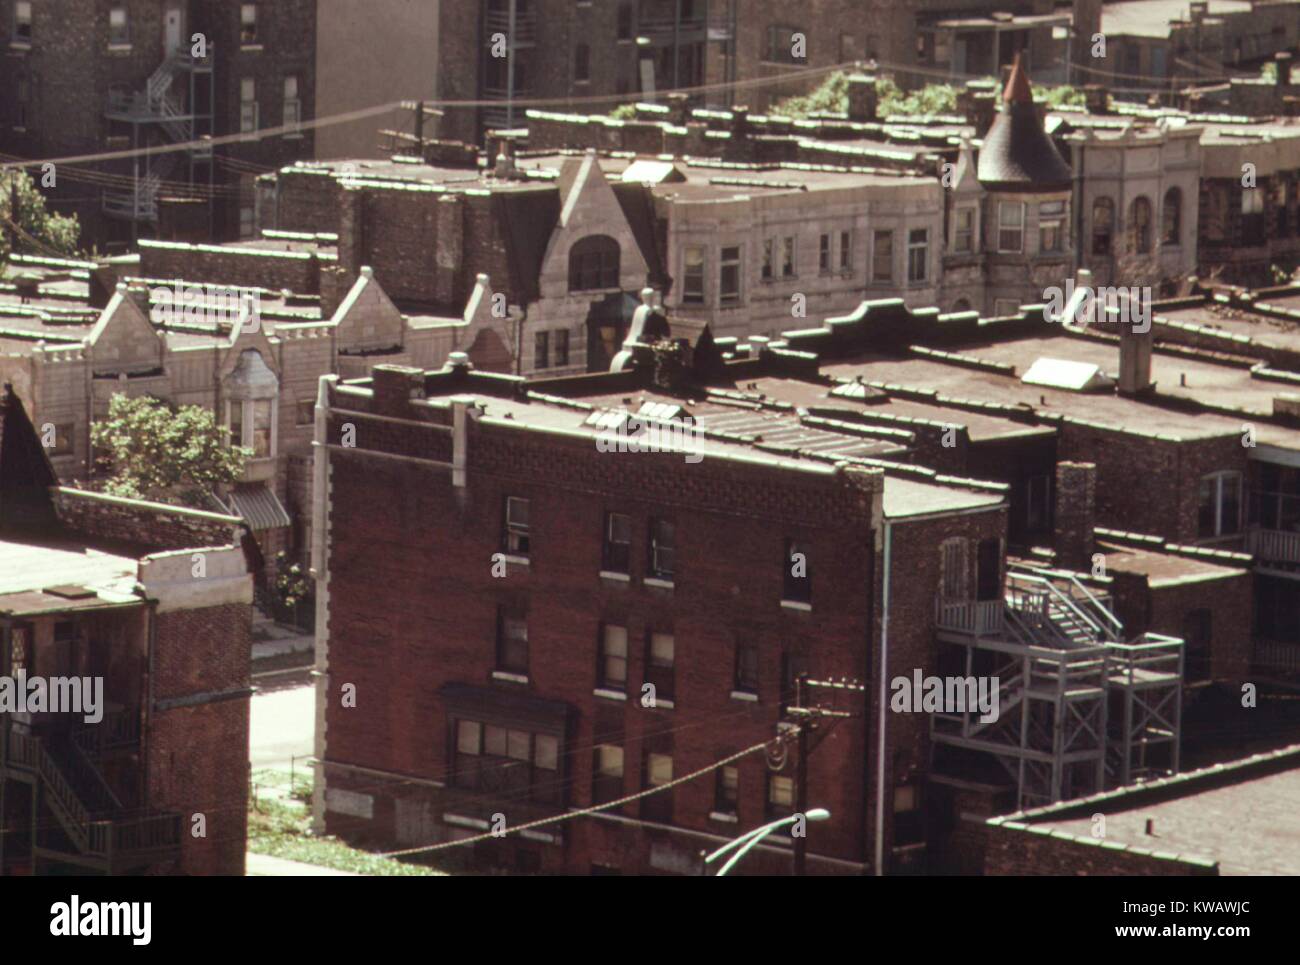 Una vista desde el techo de un edificio vecino, mostrando el callejón al lado y detrás de una fila de casas de la fila de bajos ingresos frente a otra fila, cruzando la calle, con piedra gris y ladrillo rojo hacia los lados y algunos techos triangular en la parte delantera, en el lado sur de Chicago, Illinois, en 1973. Imagen cortesía de los Archivos Nacionales. Foto de stock